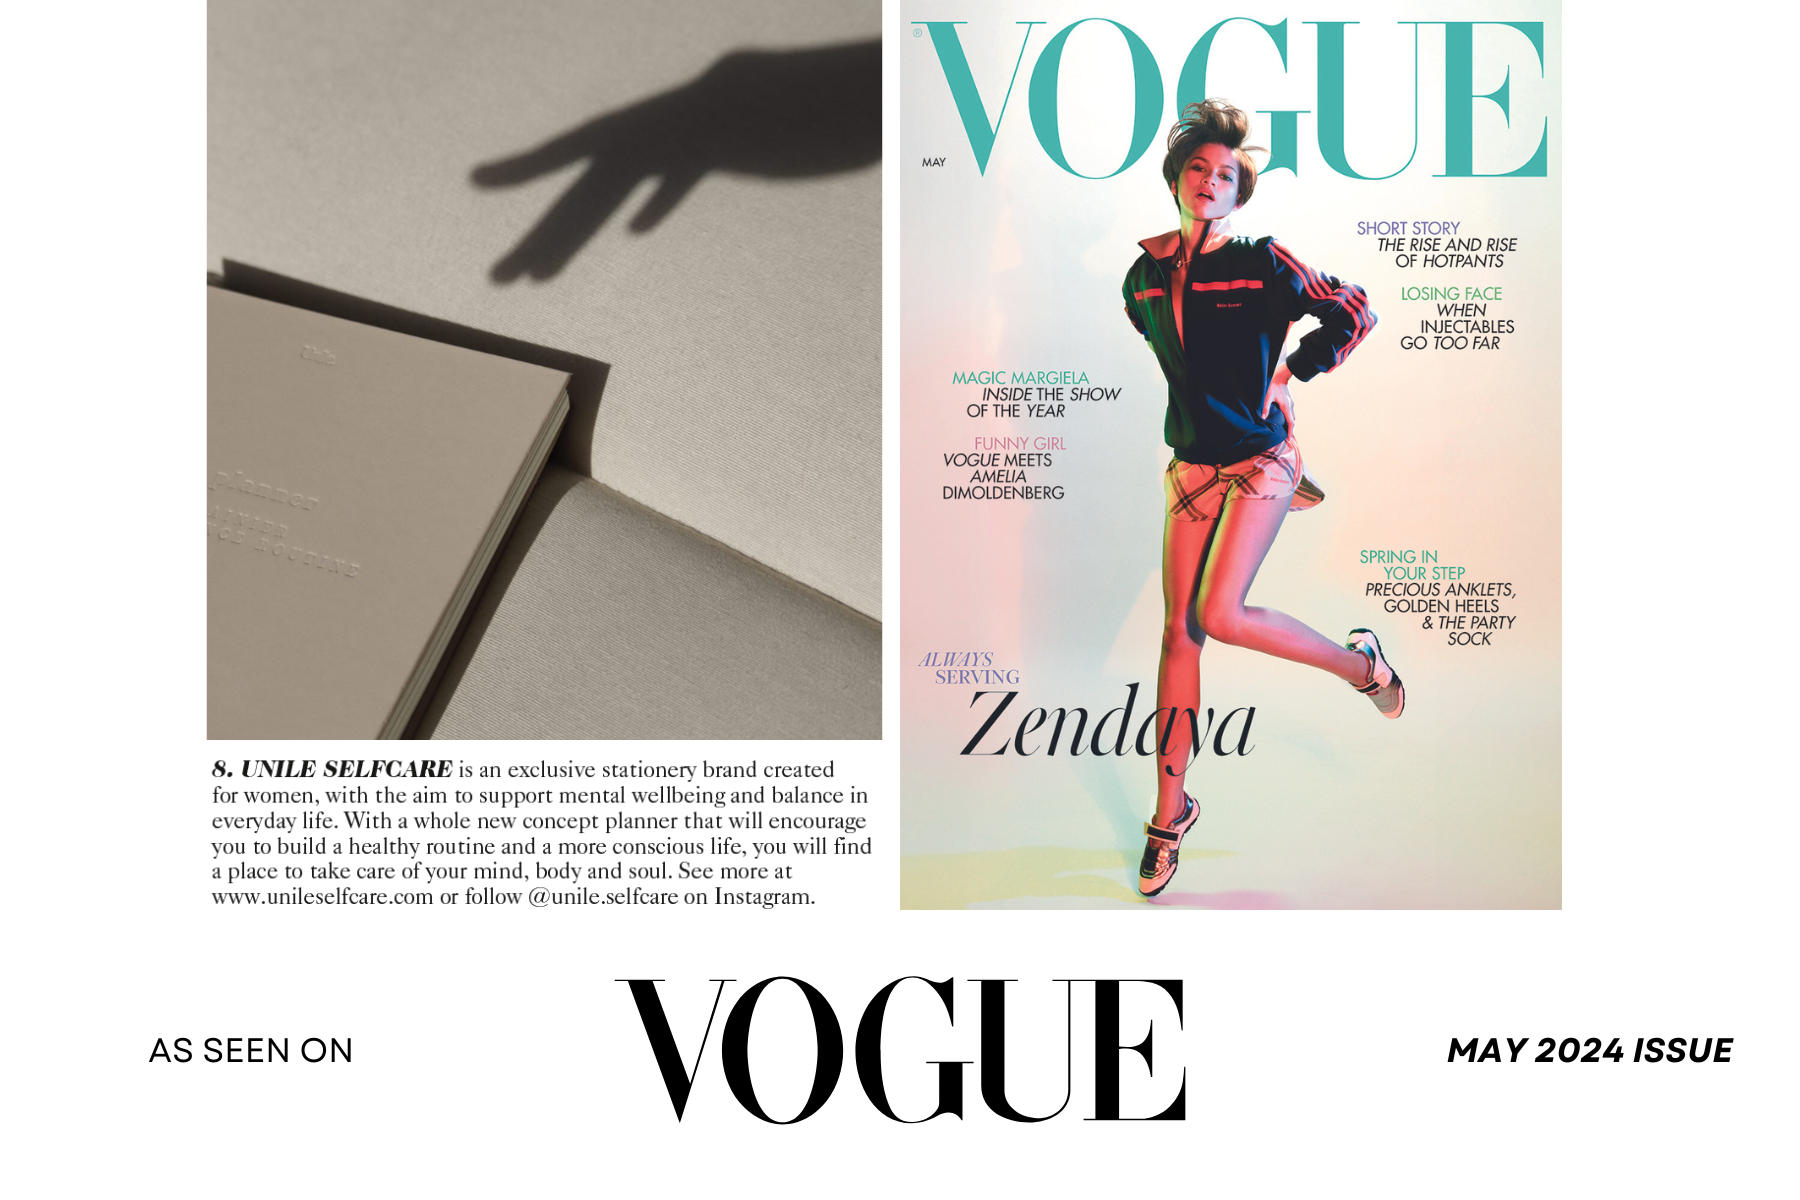 collage de la couverture du magazine Vogue du mois de mai 2024 avec photo du planner et texte de la marque Unile